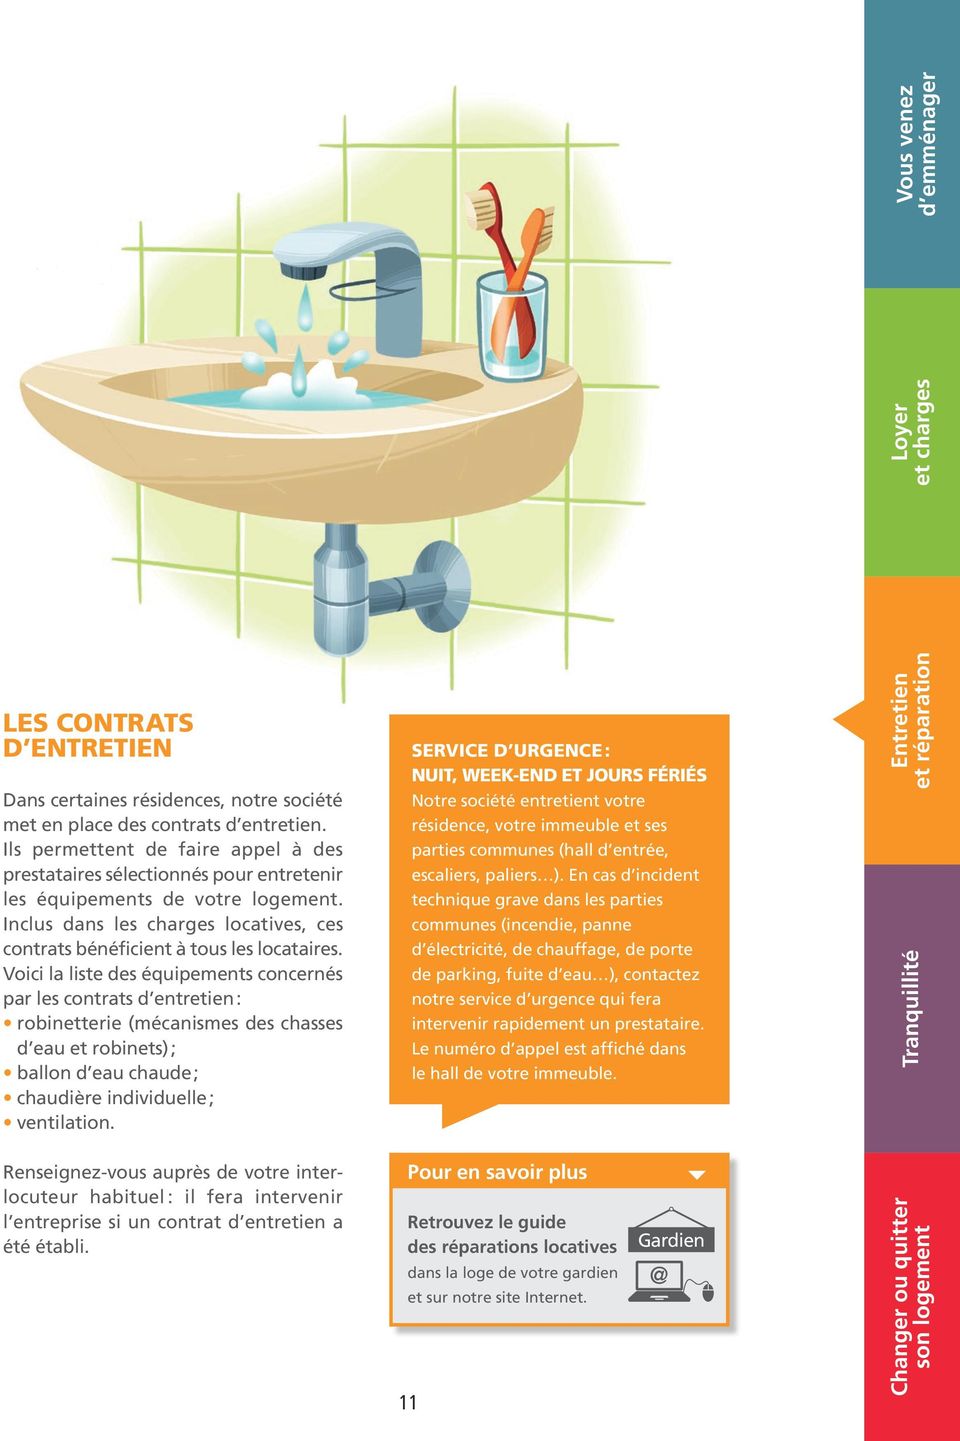 Voici la liste des équipements concernés par les contrats d entretien : robinetterie (mécanismes des chasses d eau et robinets) ; ballon d eau chaude ; chaudière individuelle ; ventilation.